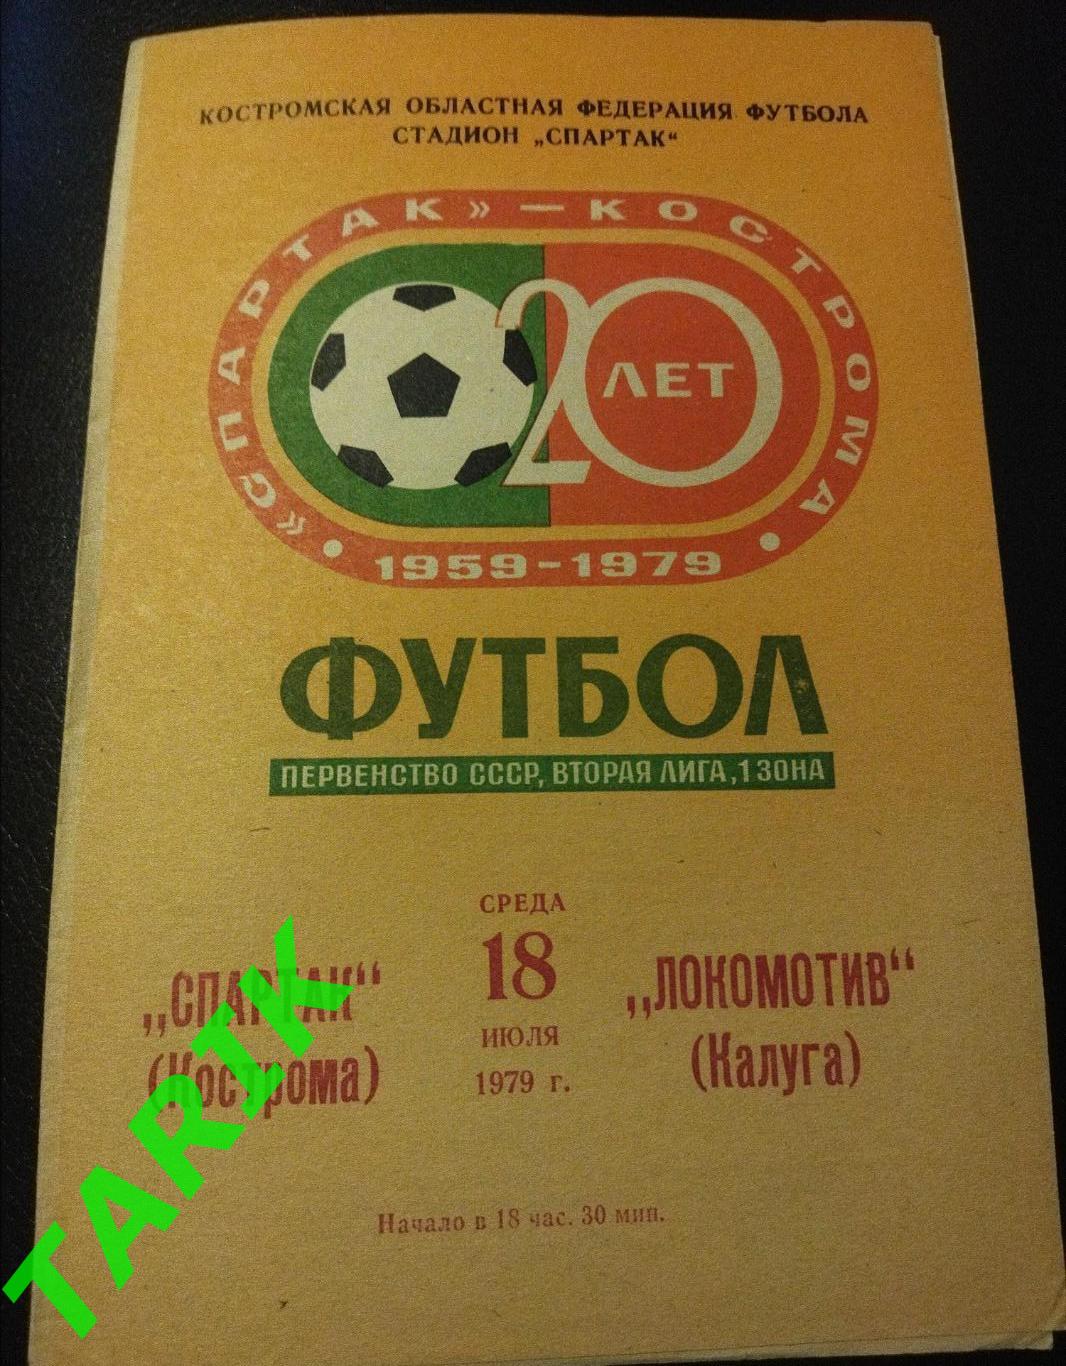 Спартак Кострома - Локомотив Калуга 1979